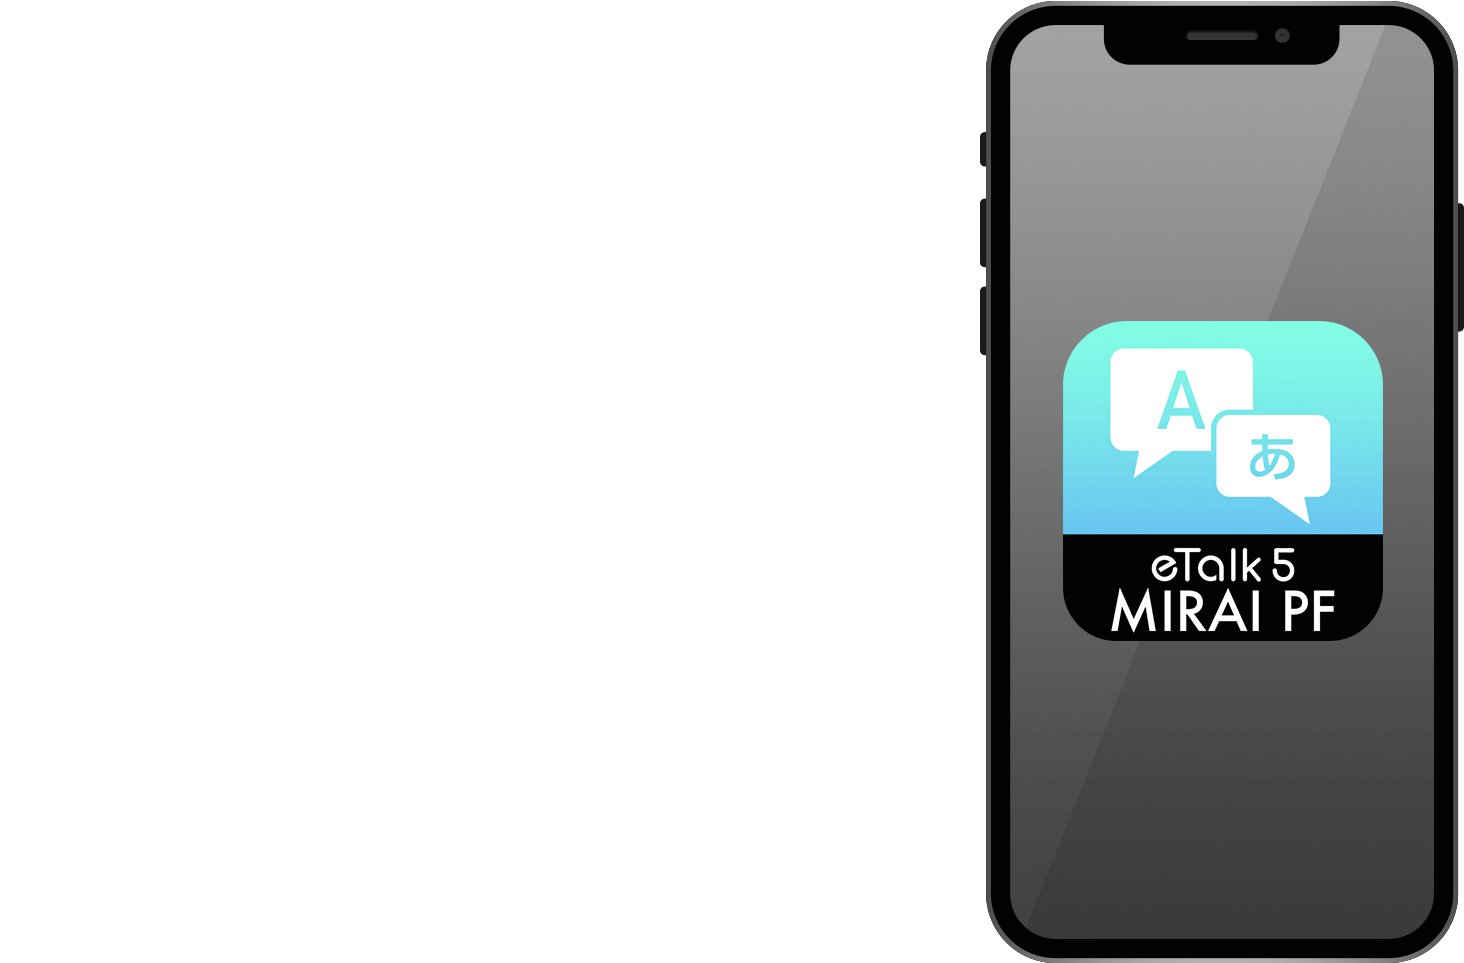 ETALK5 MIRAI PF MODELアプリで登場。